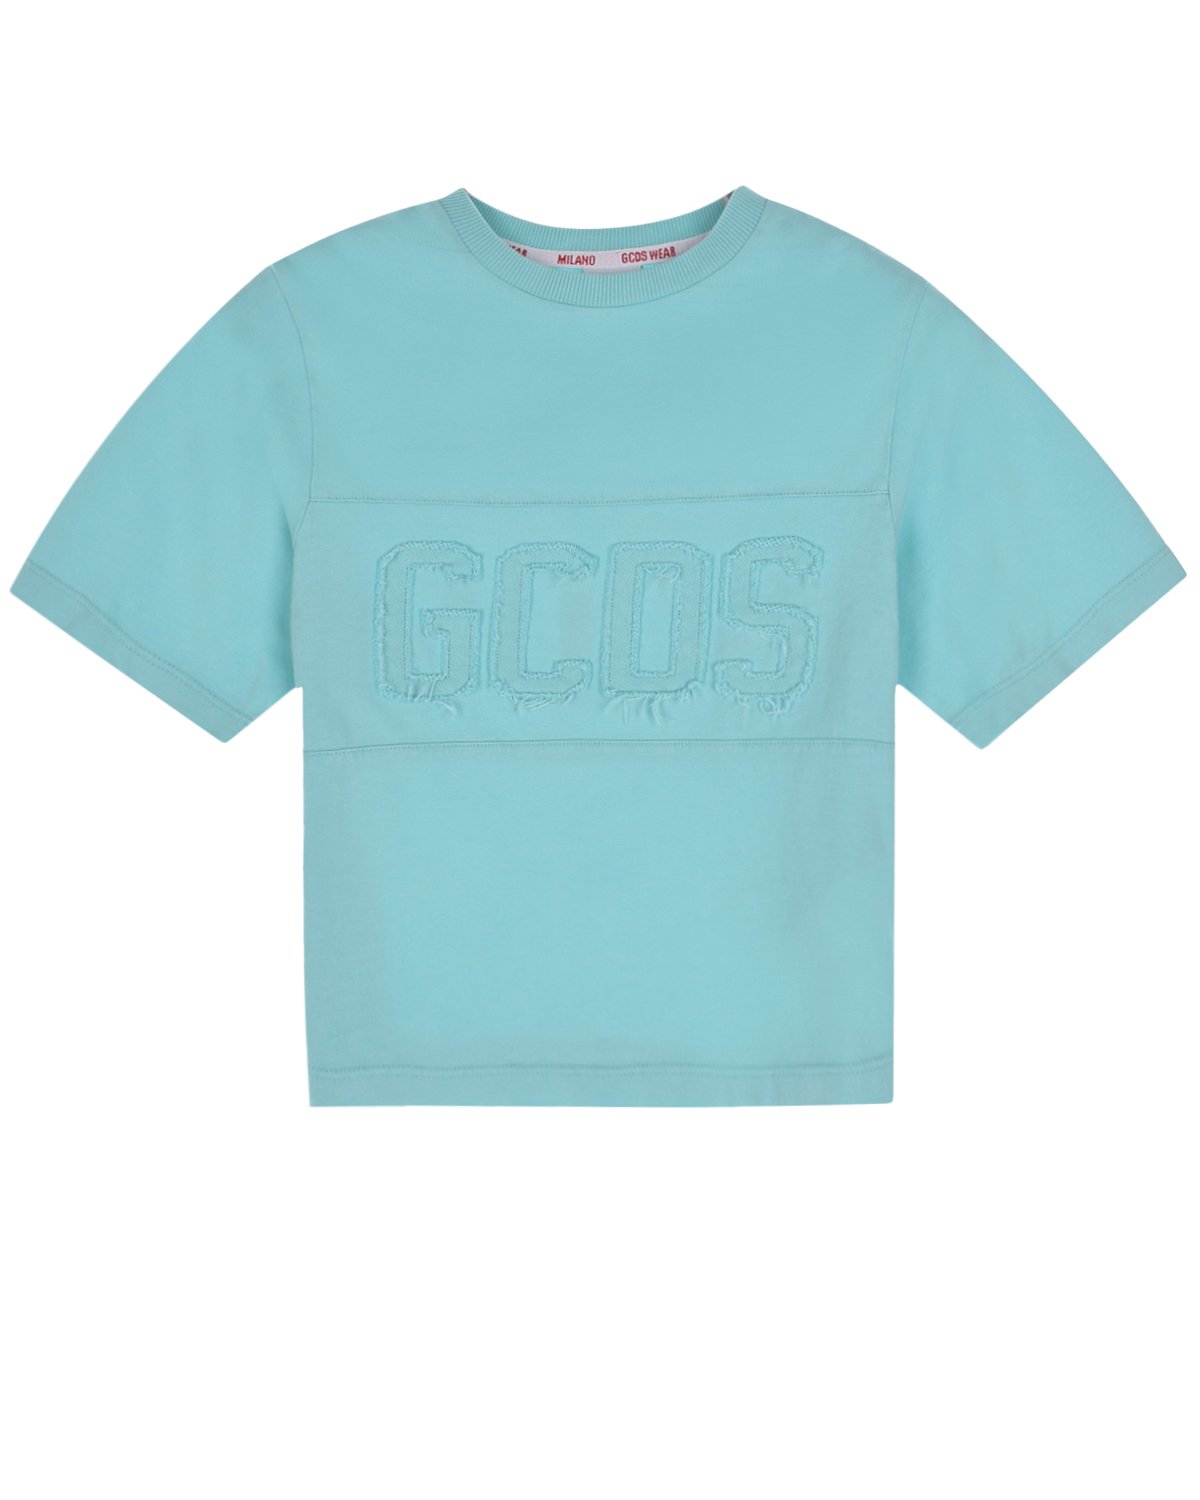 Голубая футболка с лого в тон GCDS, размер 104, цвет голубой